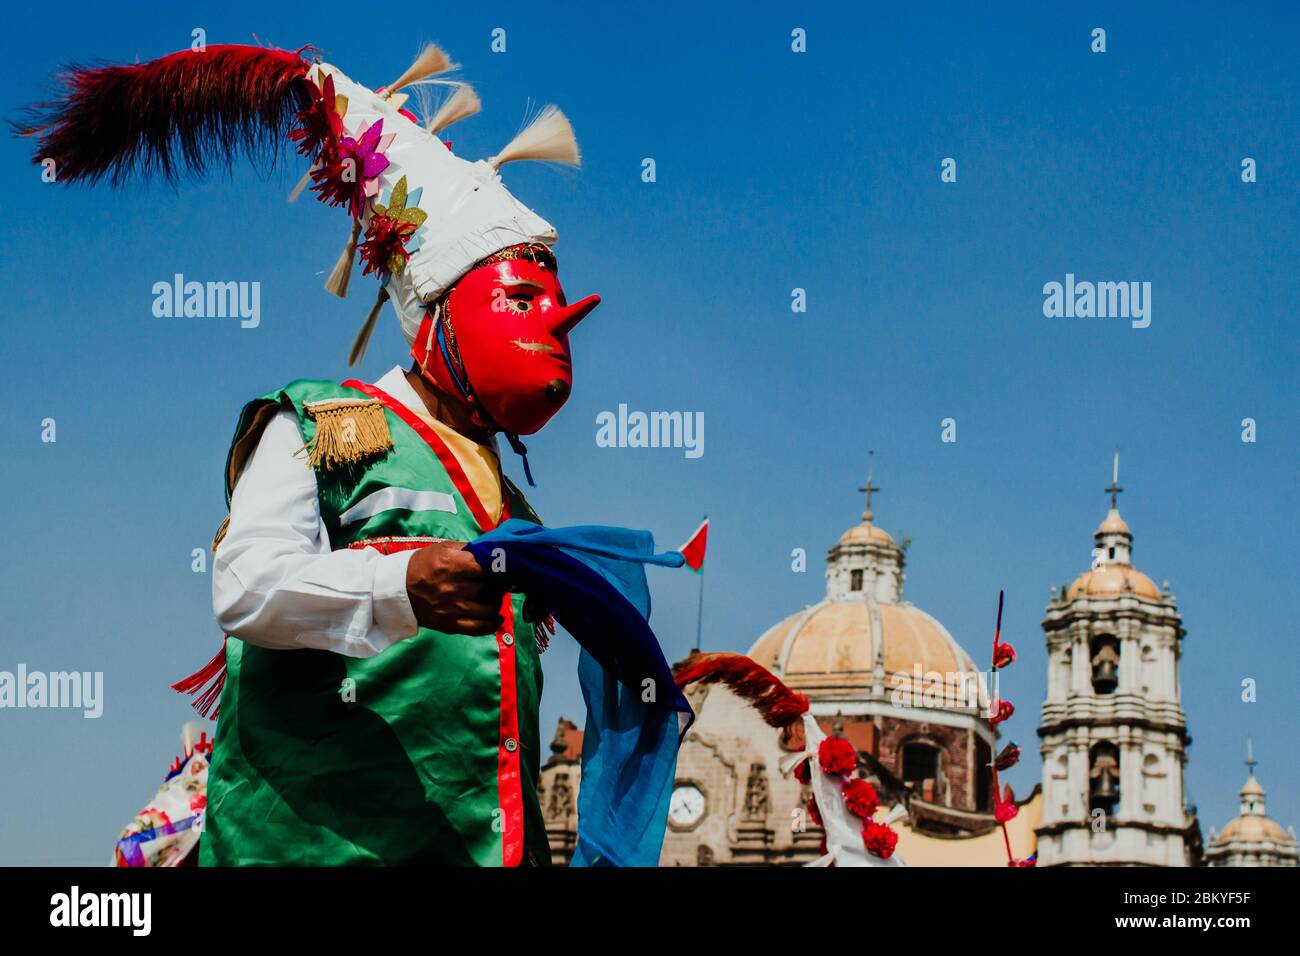 Carnaval au Mexique, danseurs mexicains portant un folk mexicain traditionnel riche en couleurs Banque D'Images